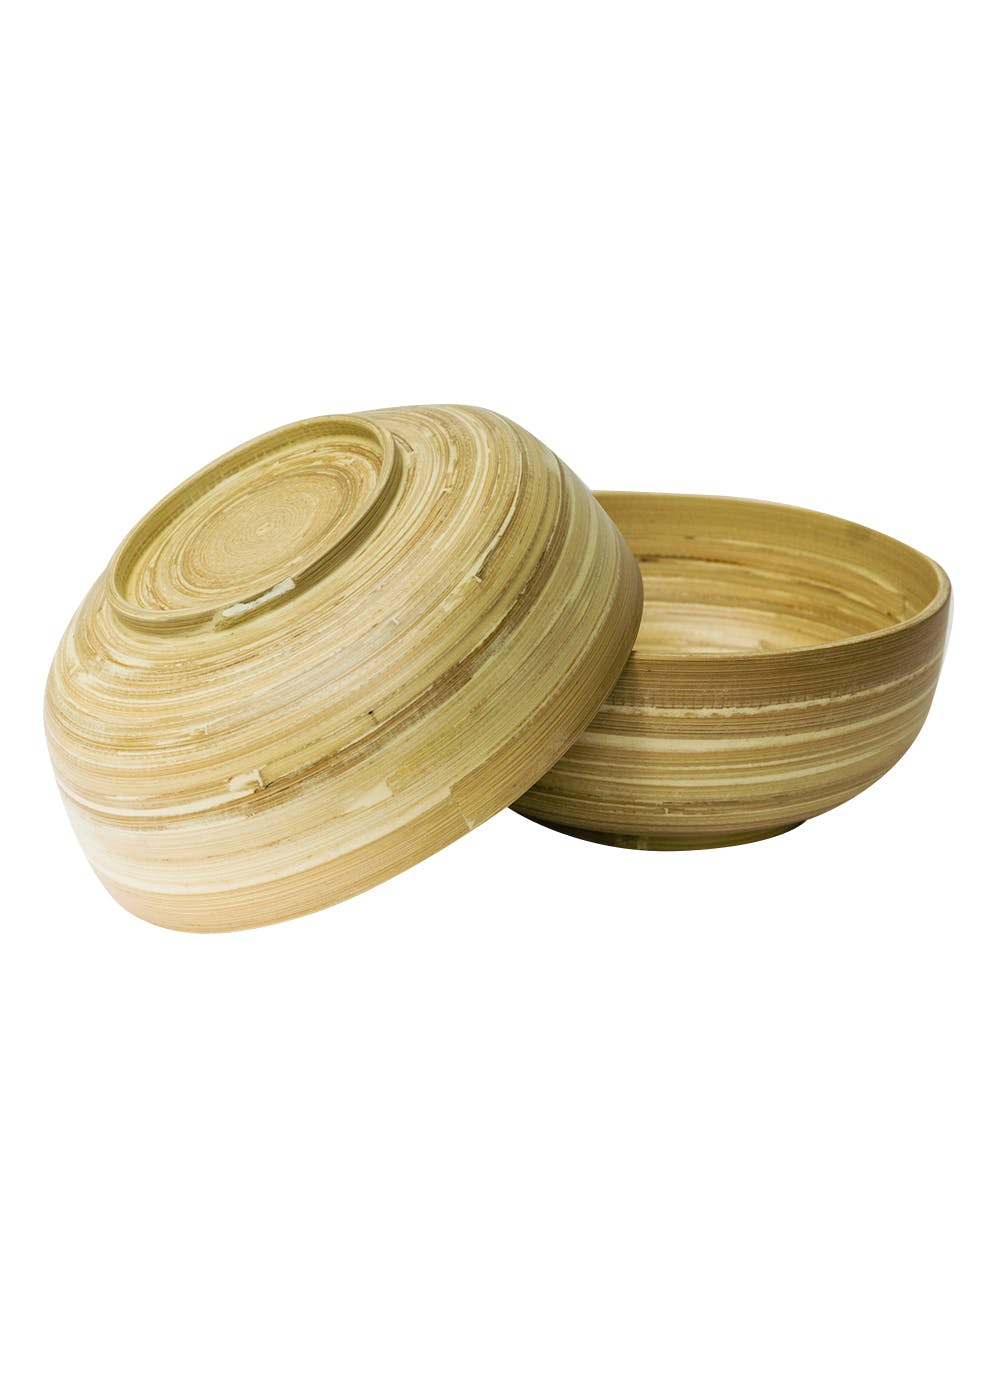 Bamboo Bowl SM - Set of 2 (Natural)